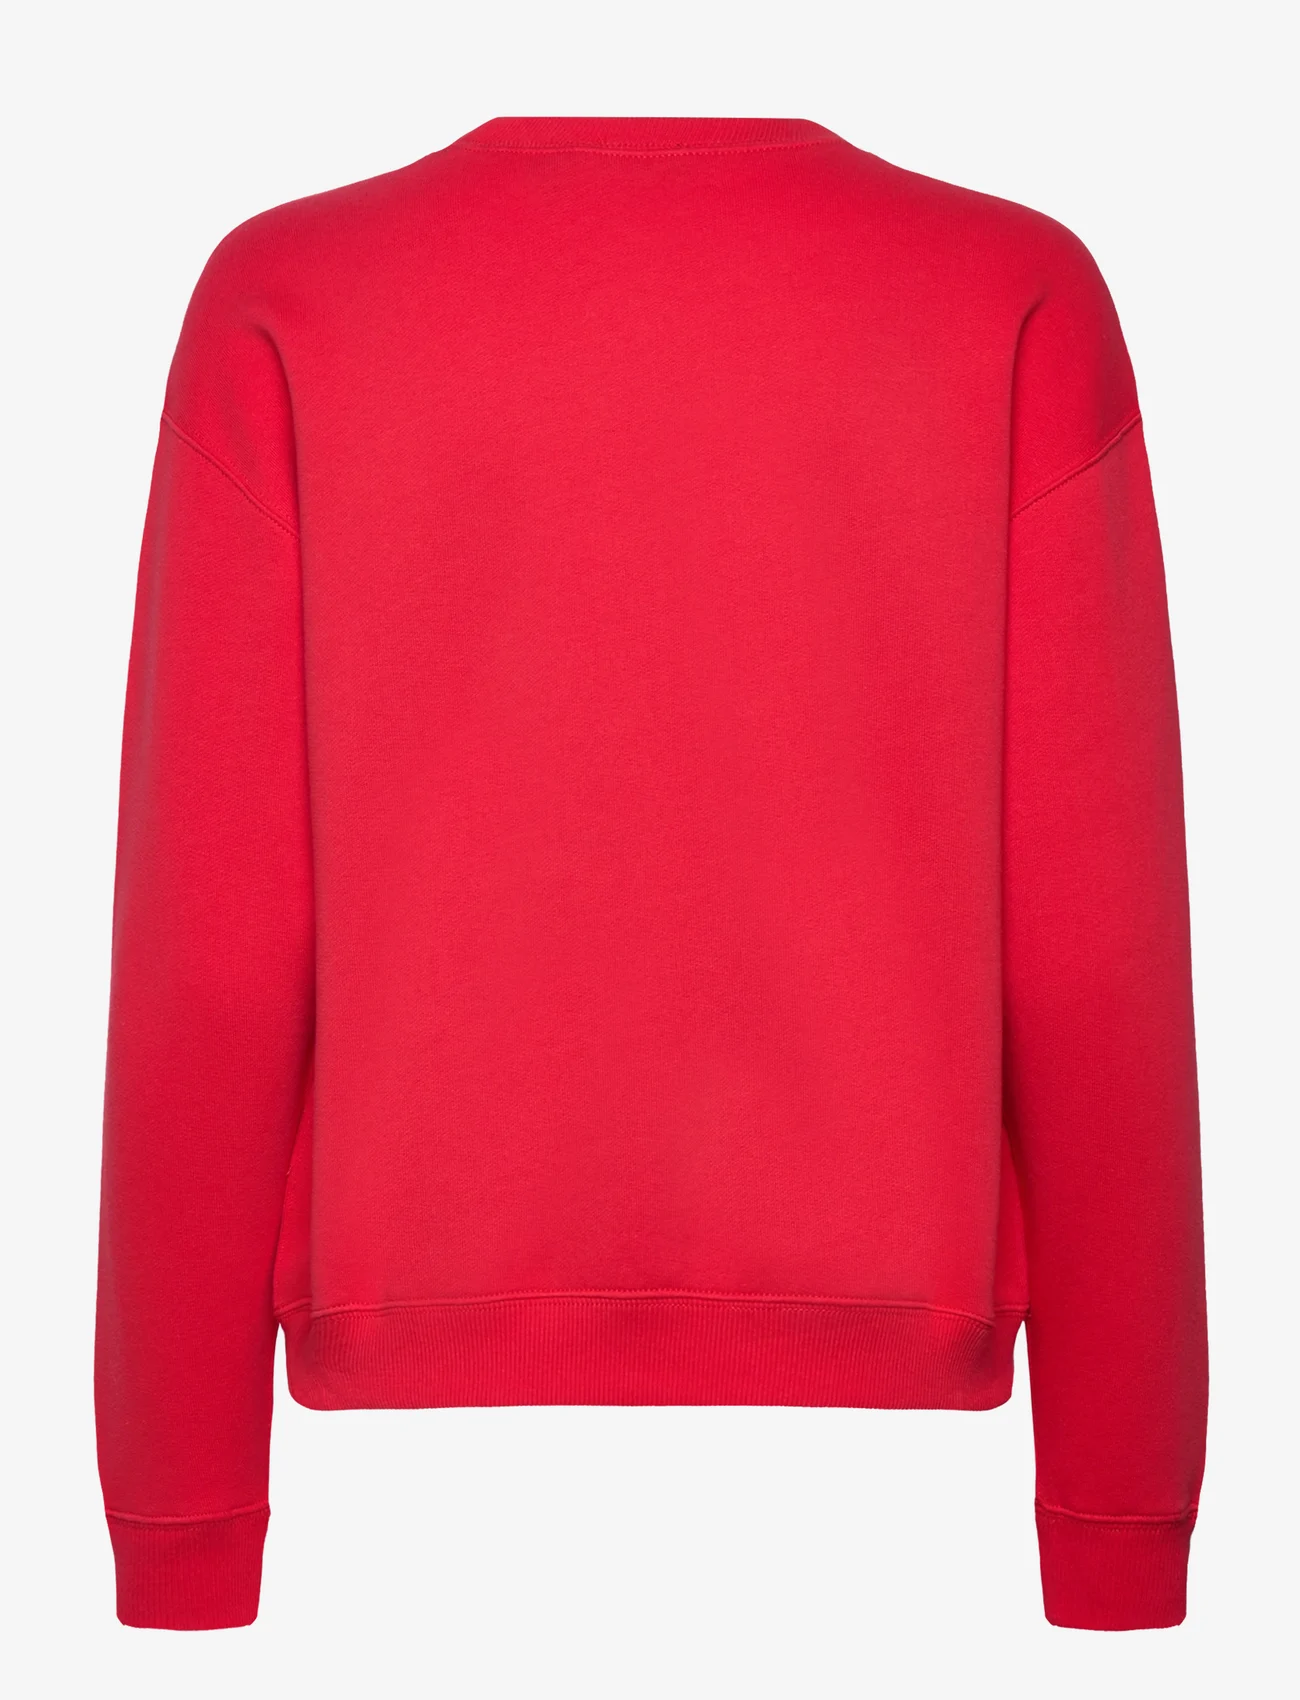 Polo Ralph Lauren - ARCTIC FLEECE-LSL-SWS - sweatshirts - bright hibiscus - 1